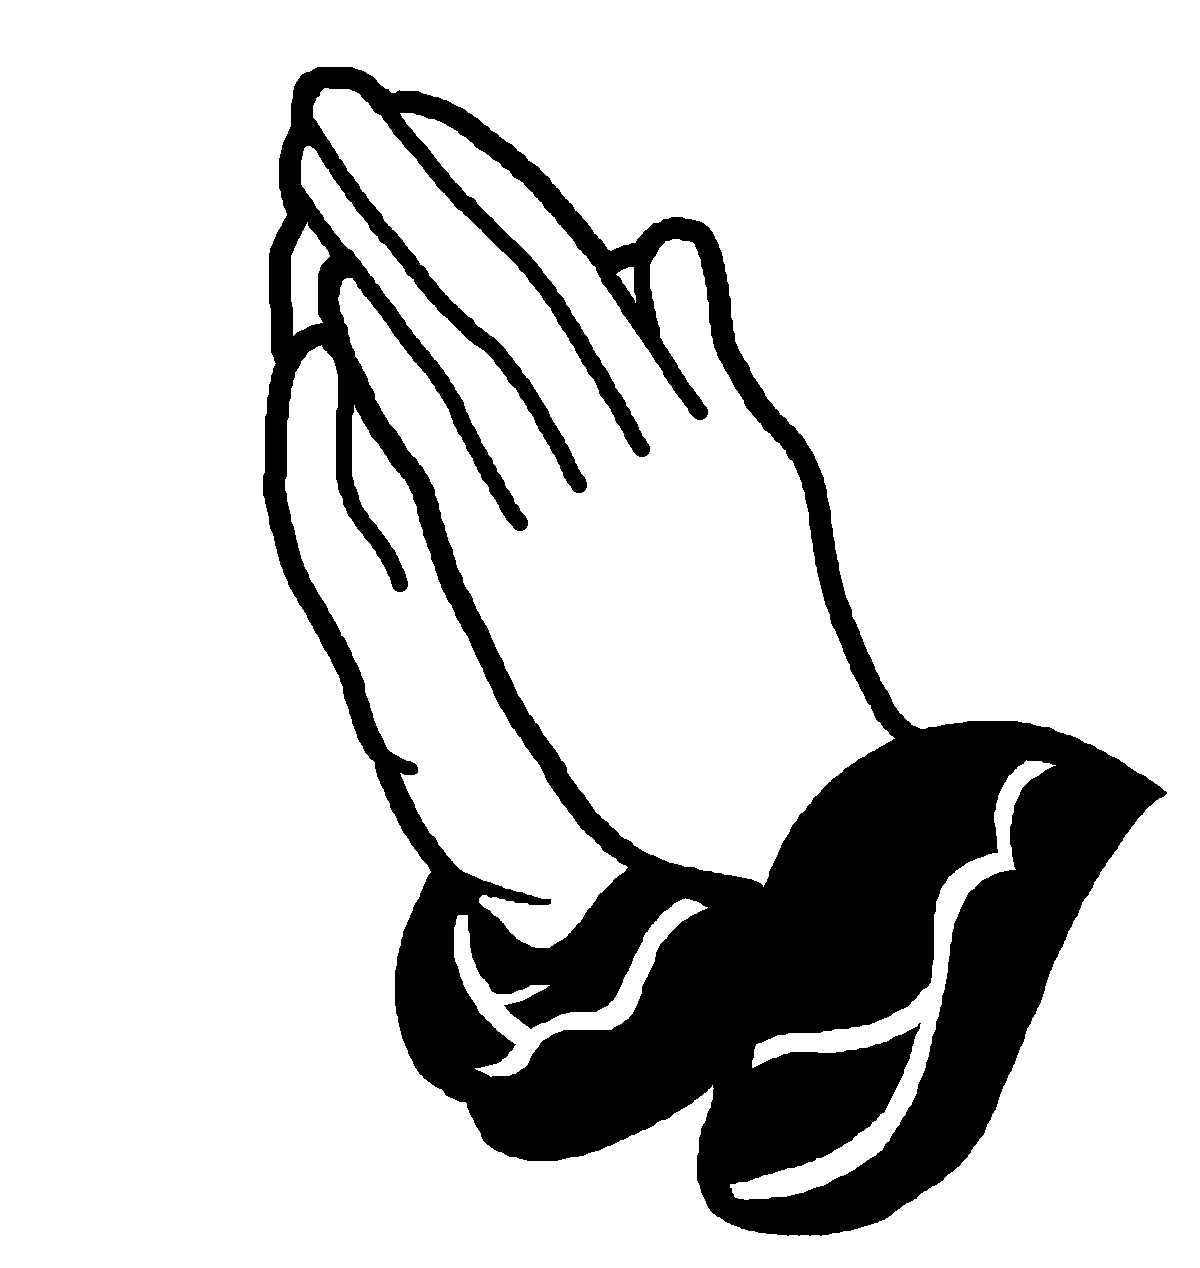 free-praying-hands-transparent-background-download-free-praying-hands